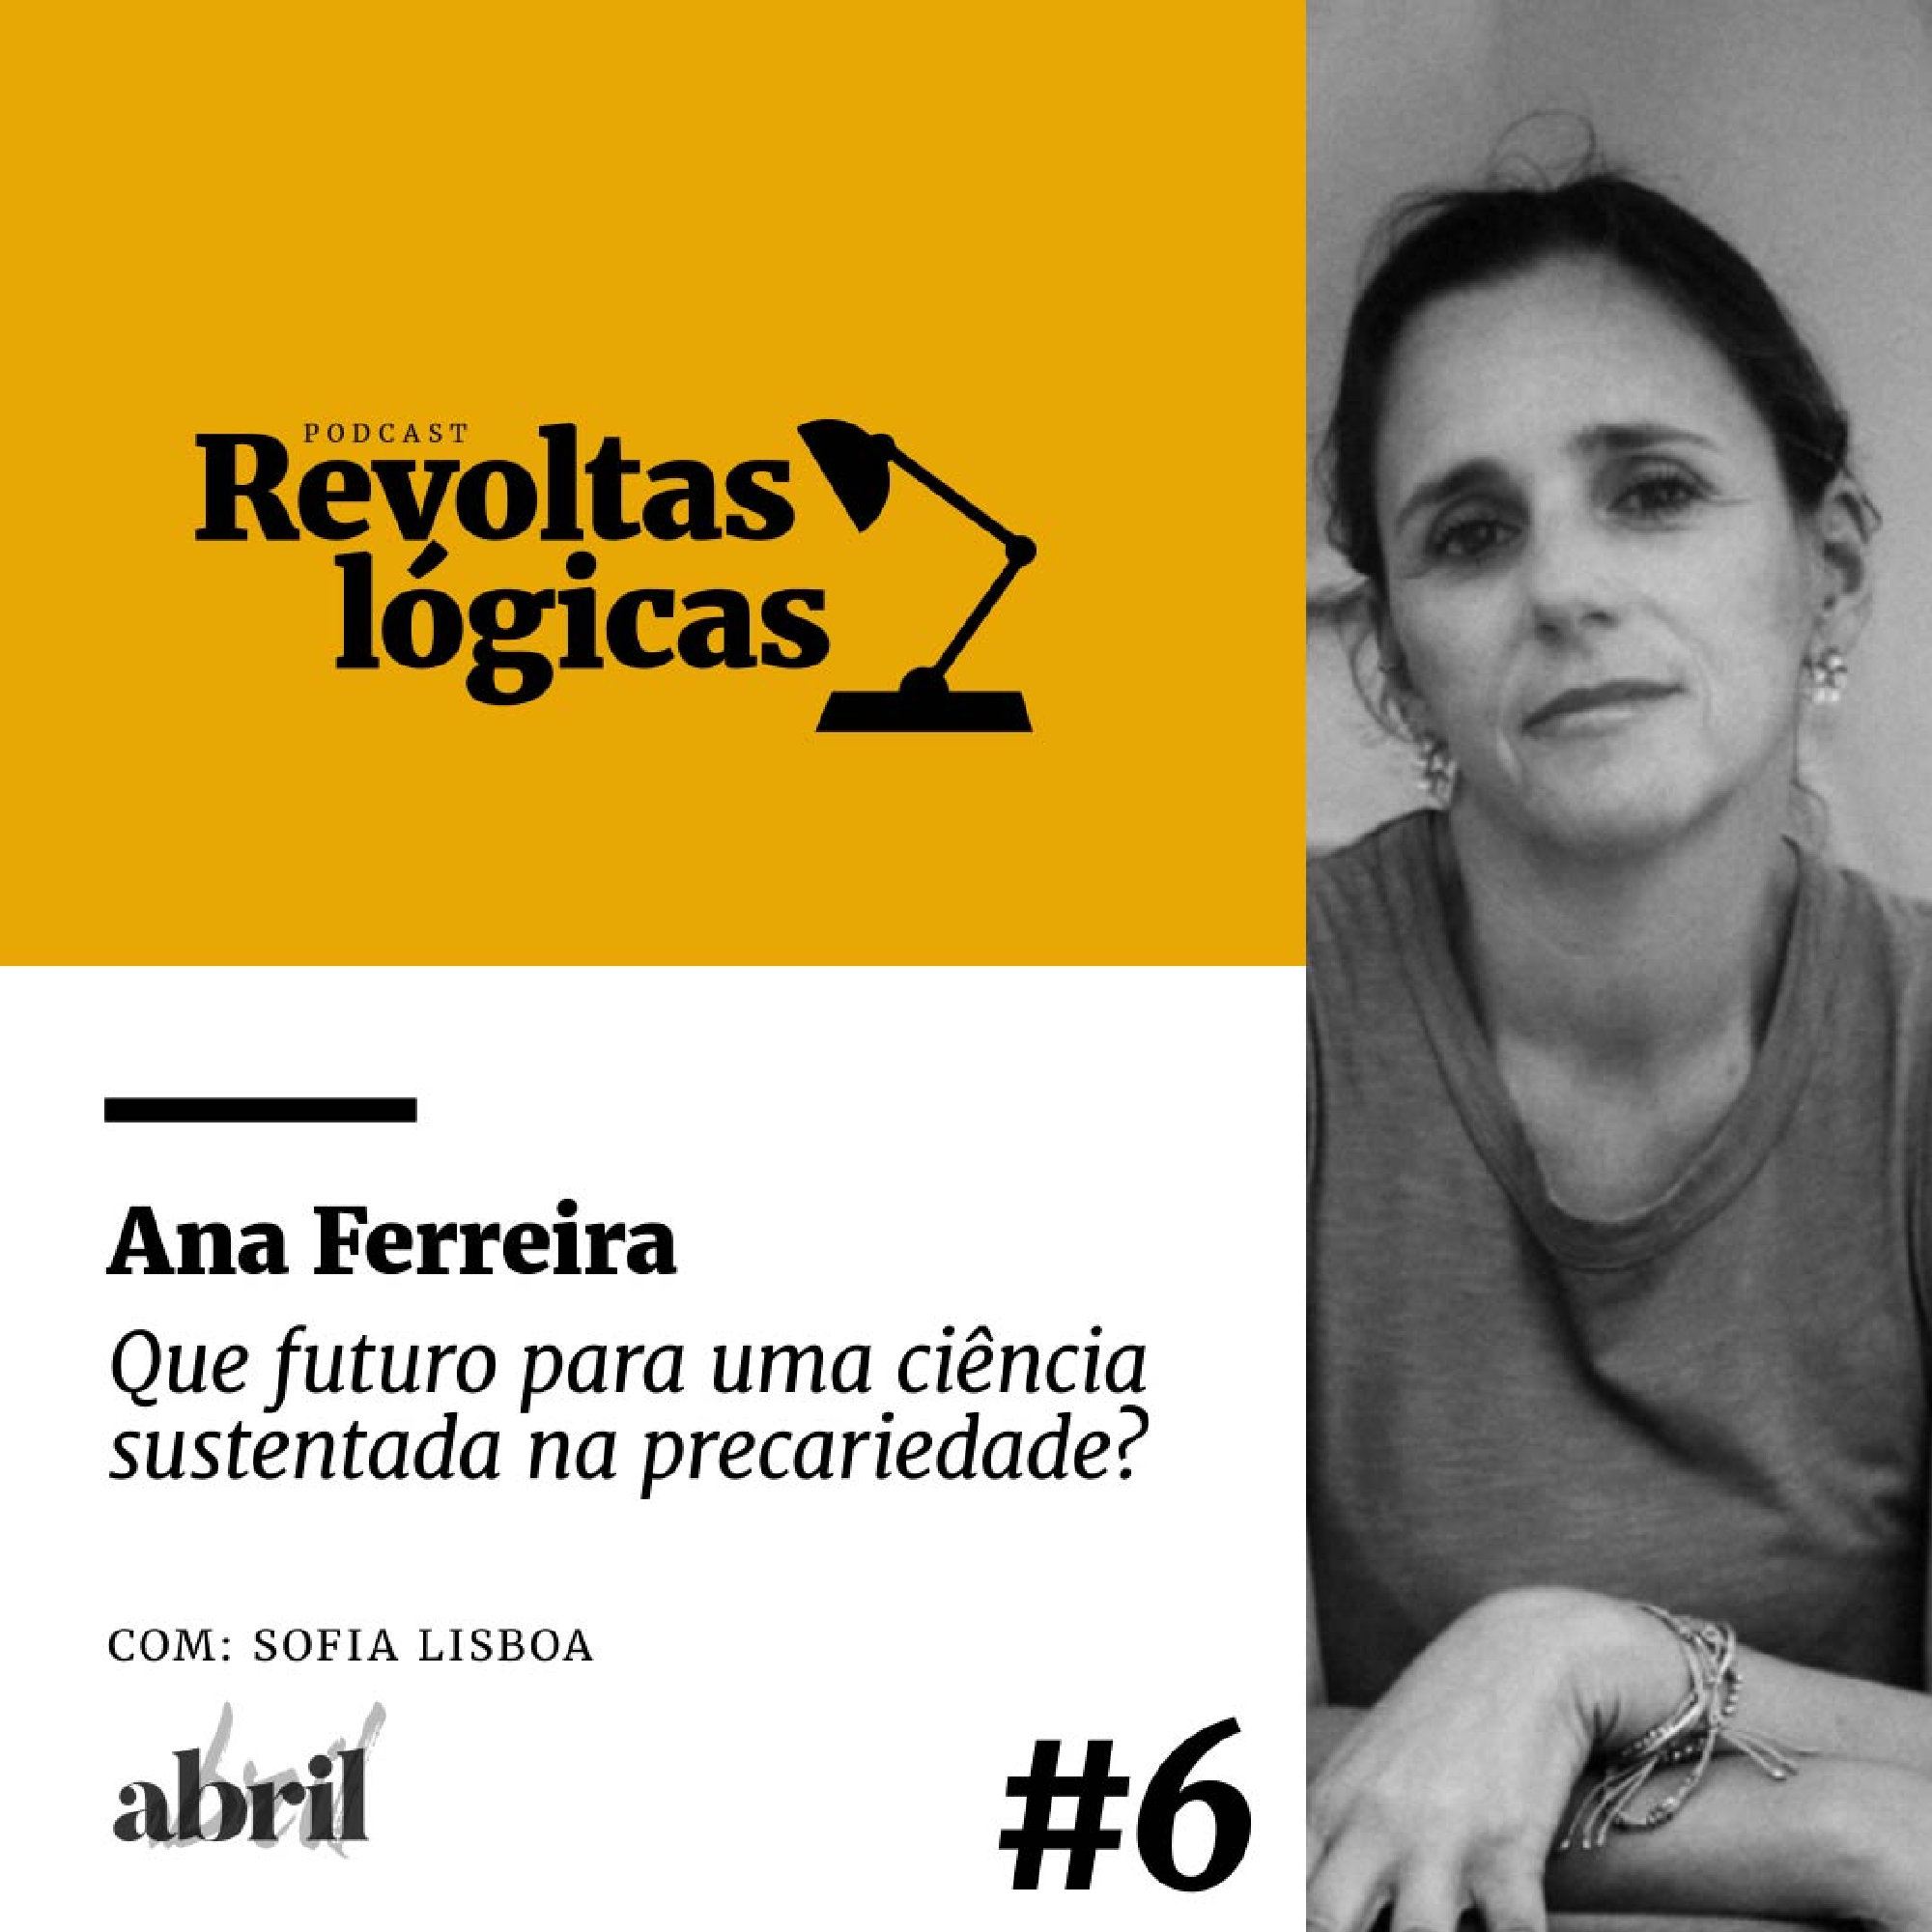 Revoltas lógicas #6 - Ana Ferreira - Que futuro para uma ciência sustentada na precariedade?